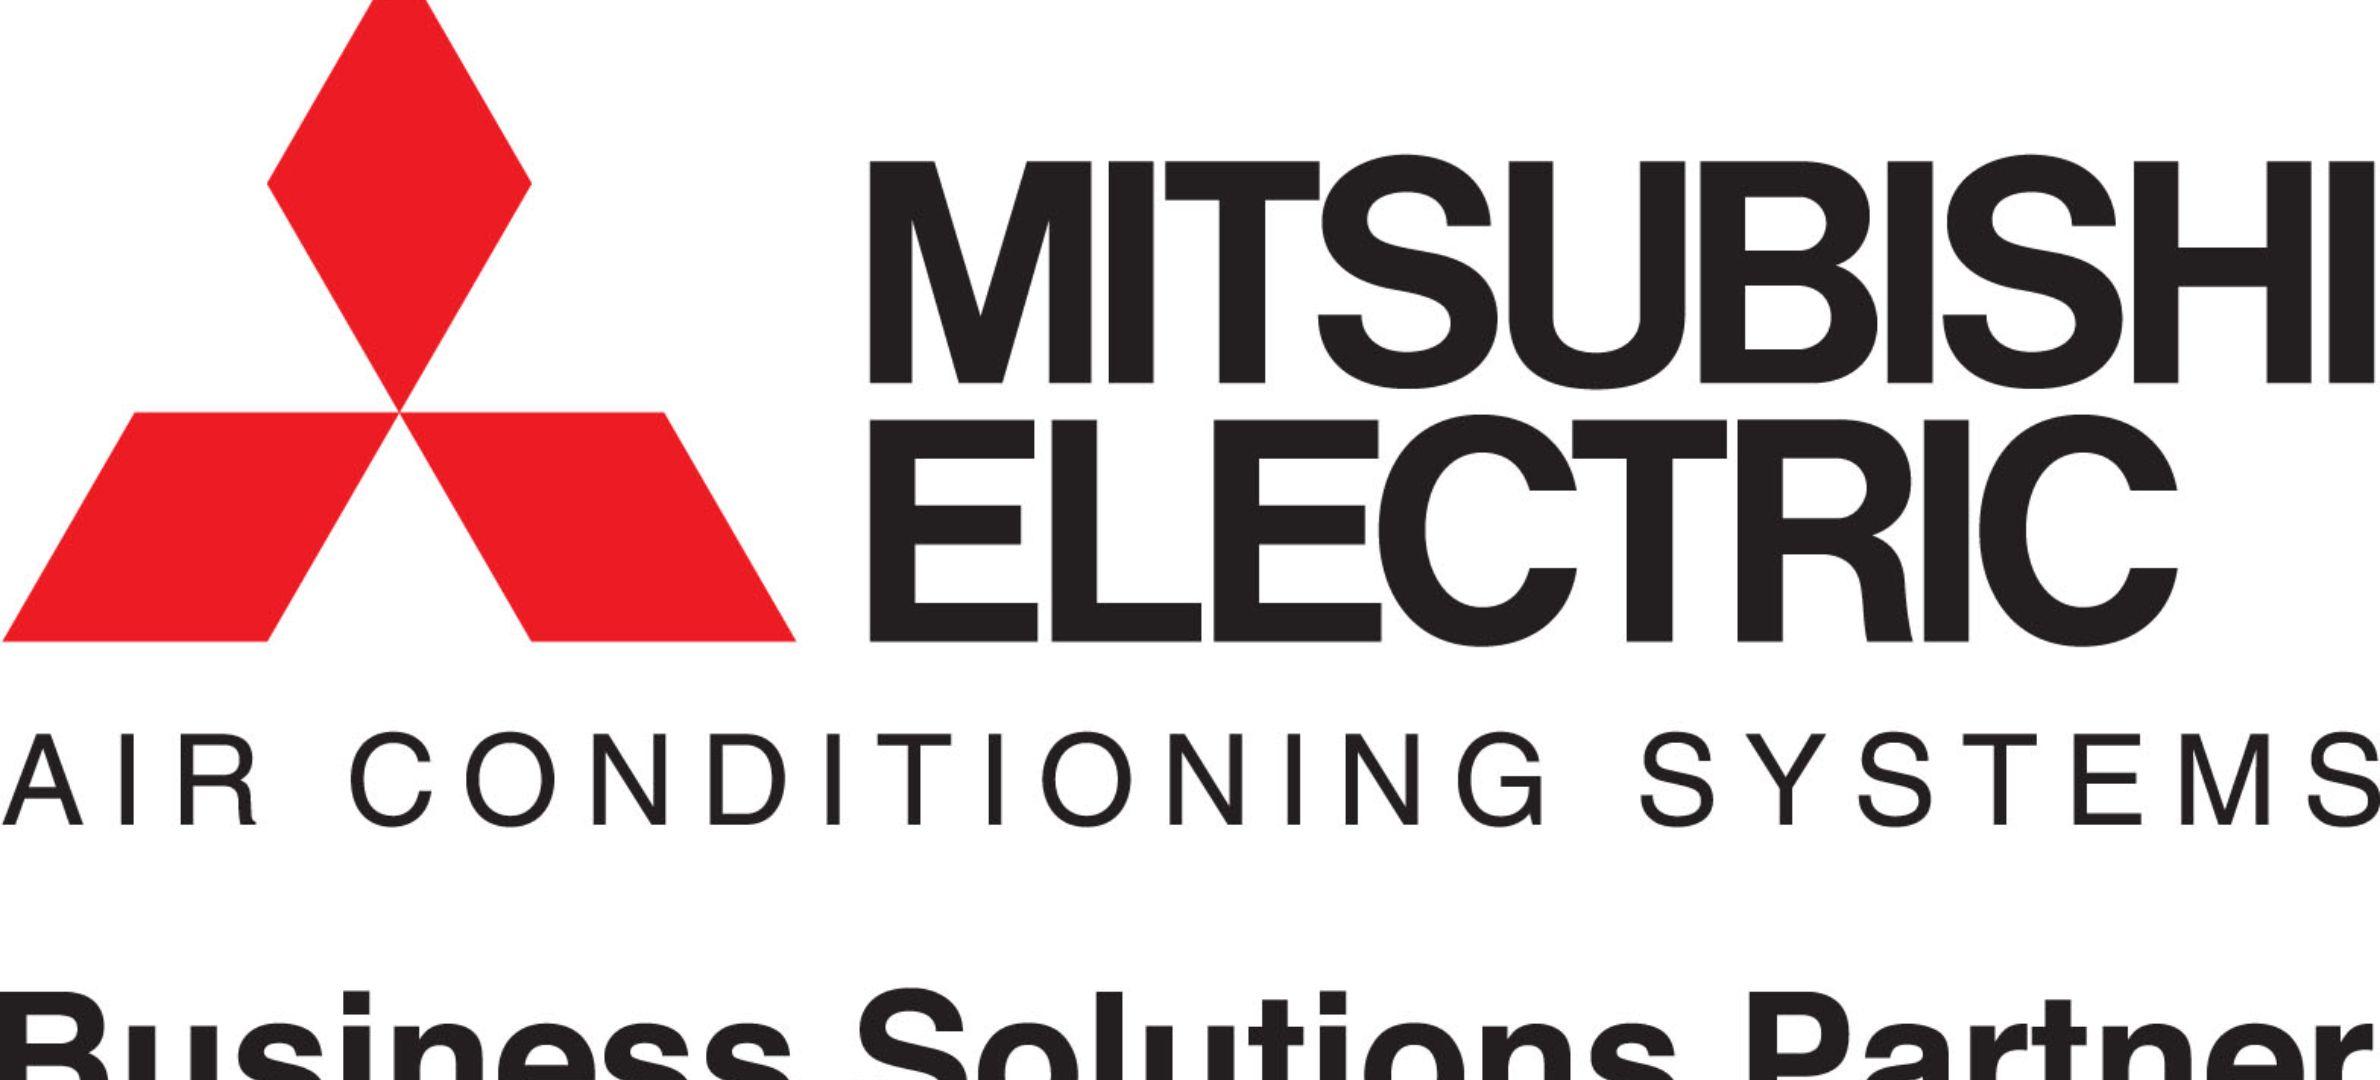 Mitsubishi Electric Logo - Mitsubishi electric logo - Arthur McKay